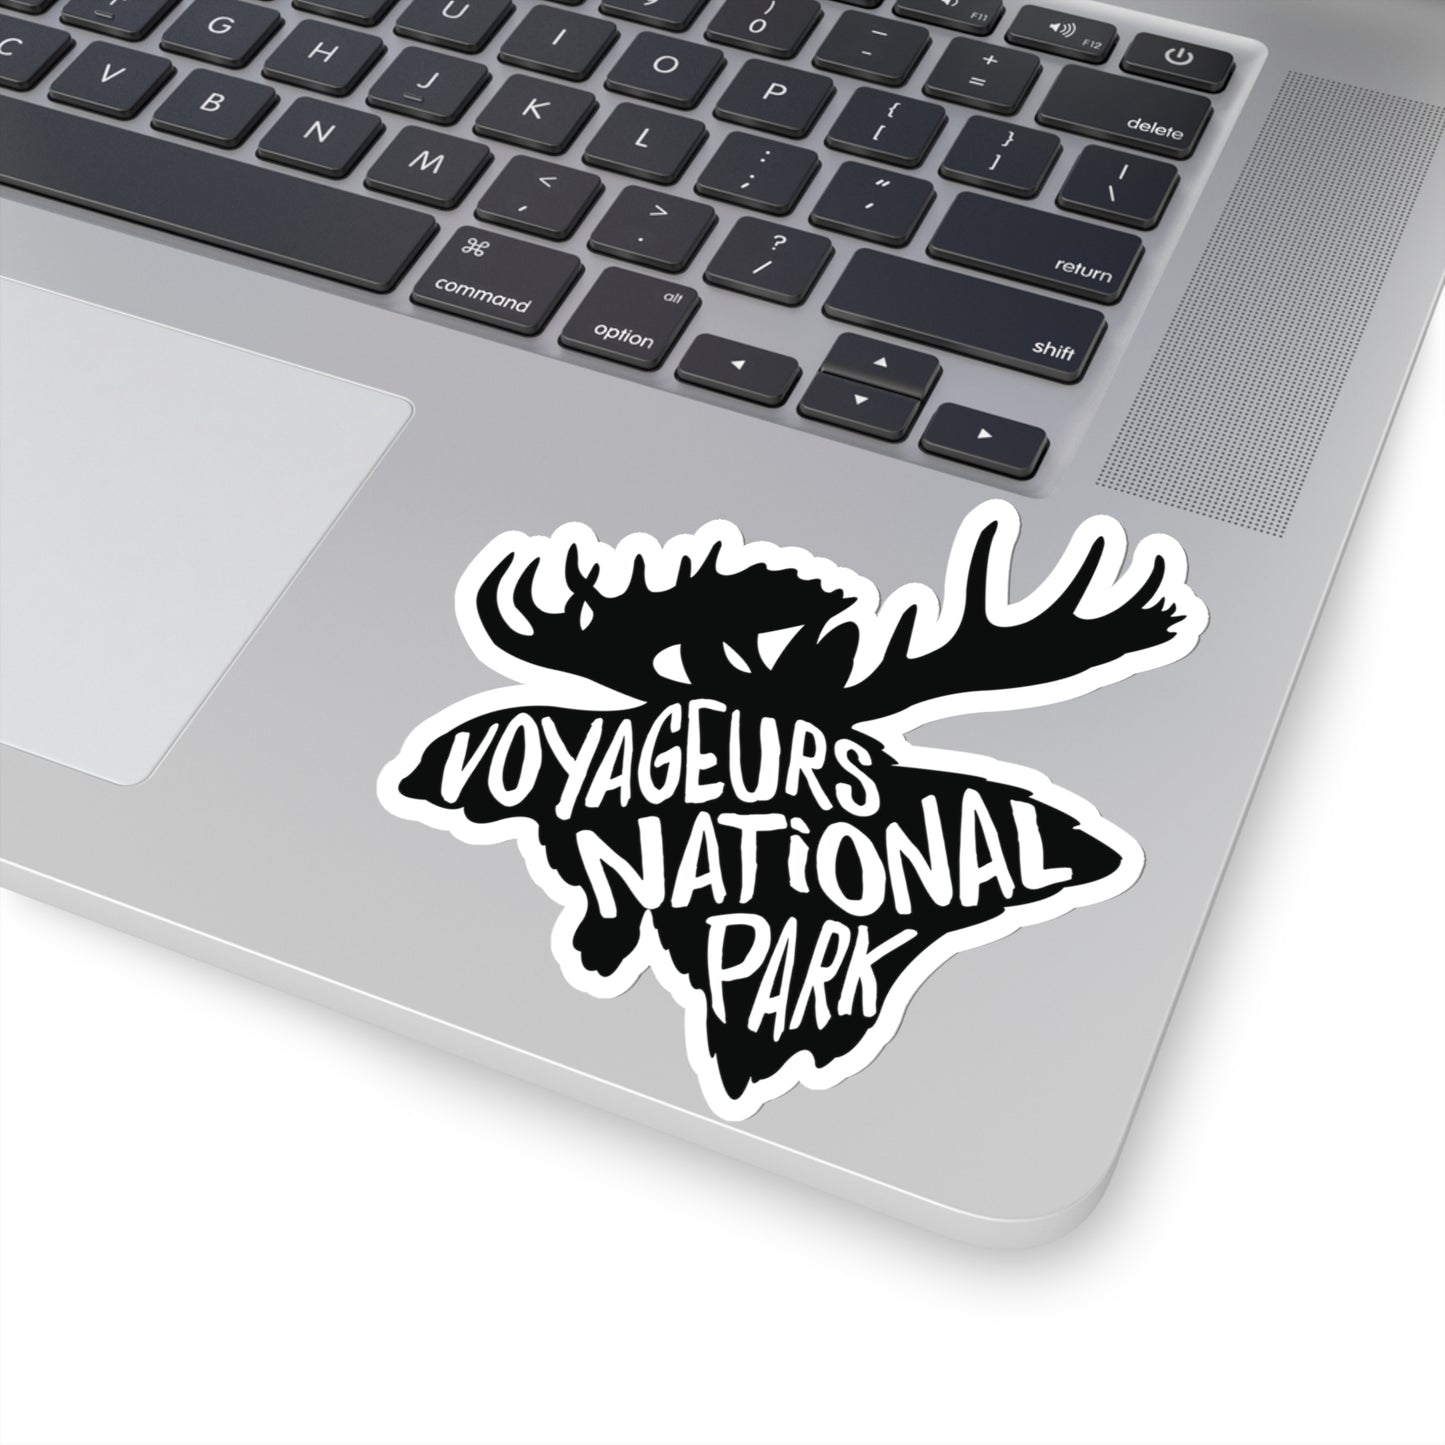 Voyageurs National Park Sticker - Moose